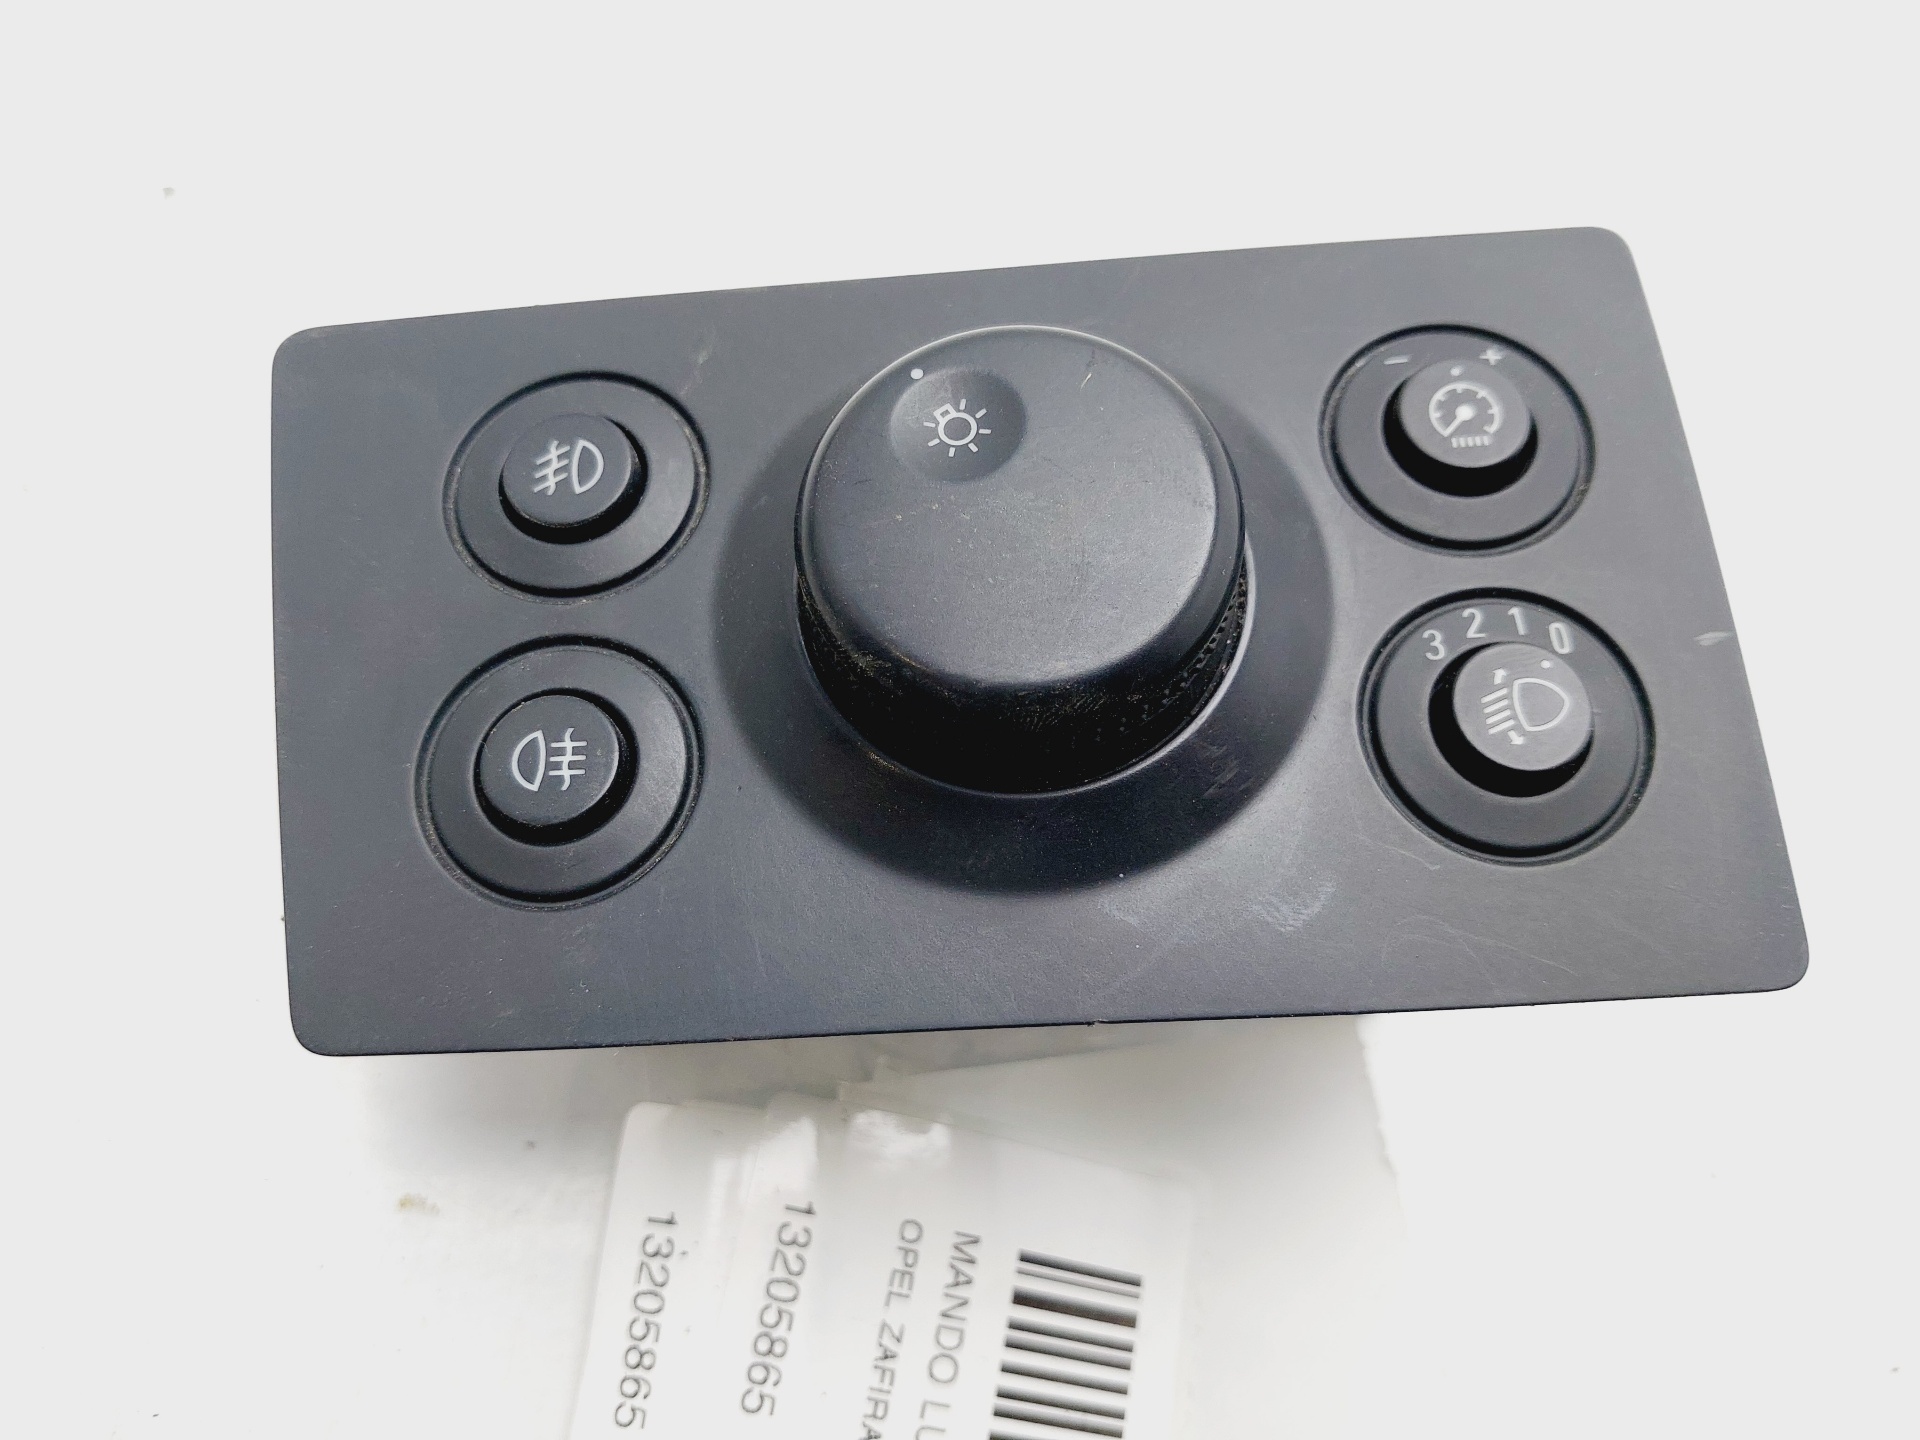 OPEL Zafira B (2005-2010) Headlight Switch Control Unit 13205865 25268935